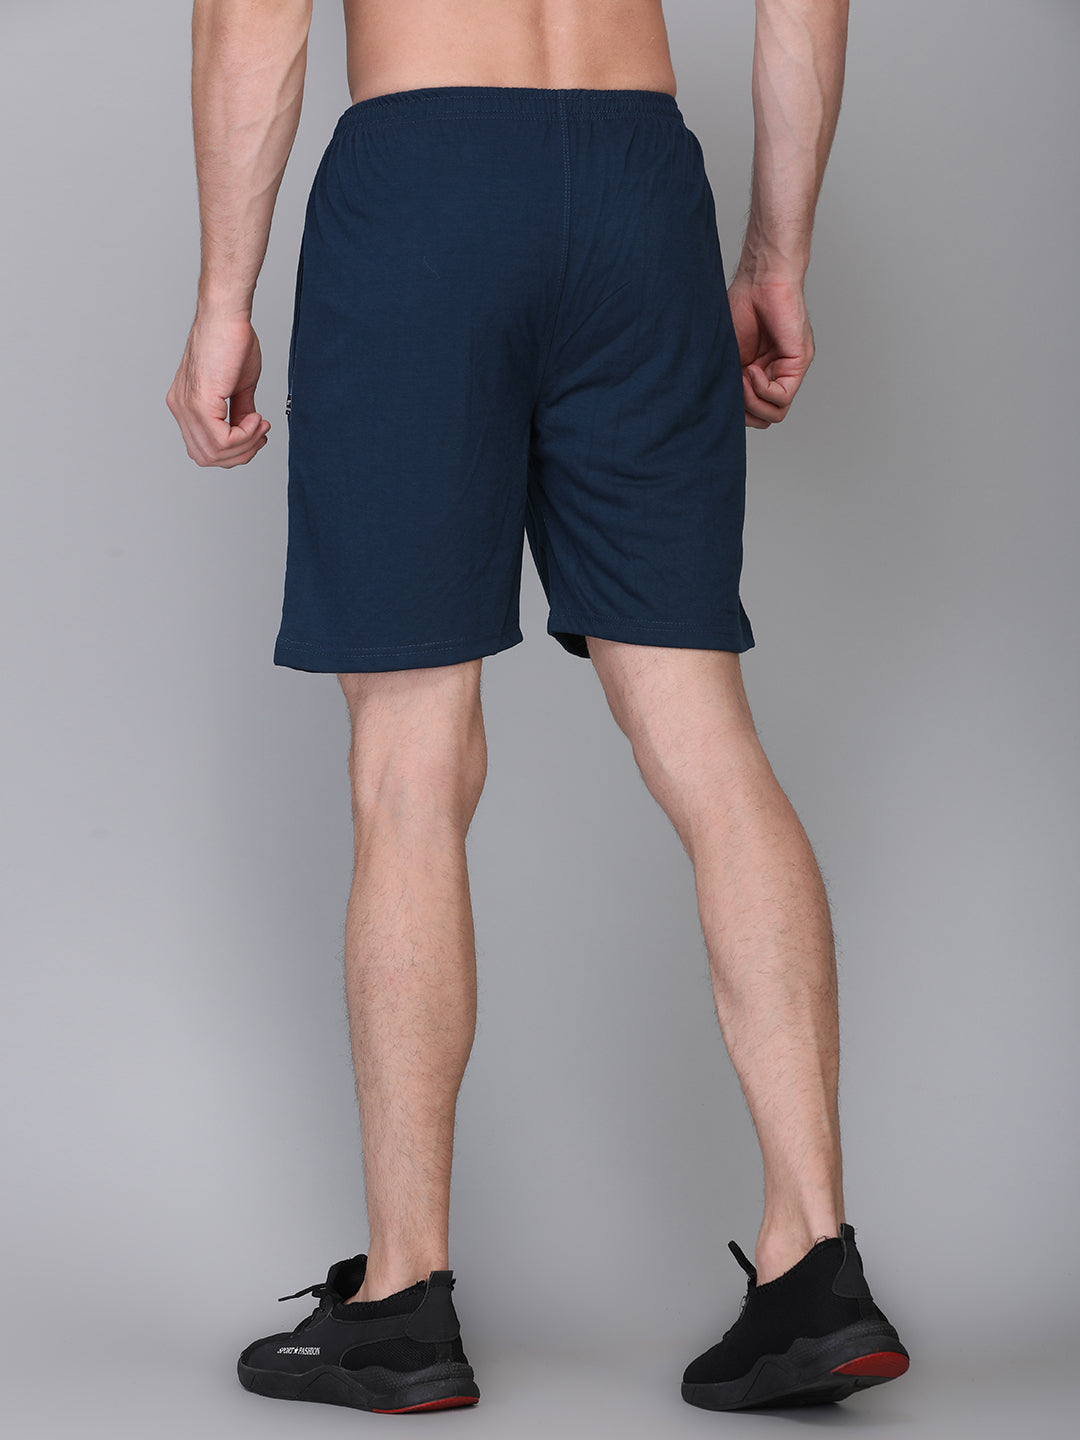 ZIMFIT  Solid Men Blue Regular Shorts, Running Shorts, Casual Shorts, Night Shorts, Bermuda Shorts, Gym Shorts